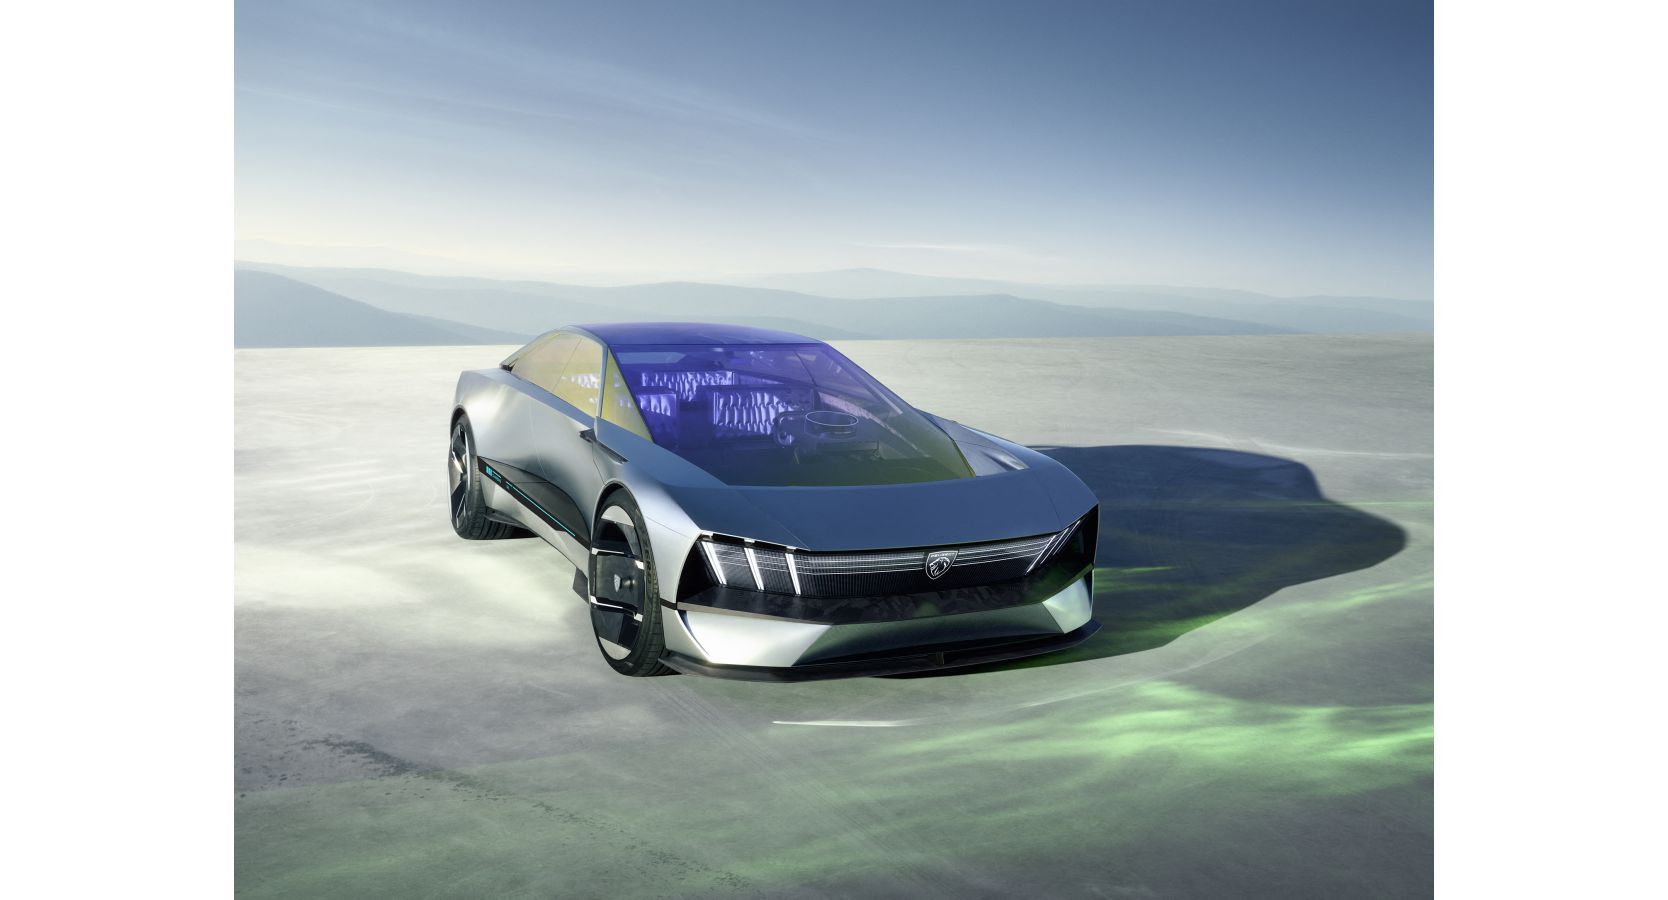 PEUGEOT abre un nuevo capítulo y presenta su visión del futuro del automóvil: PEUGEOT INCEPTION Concept